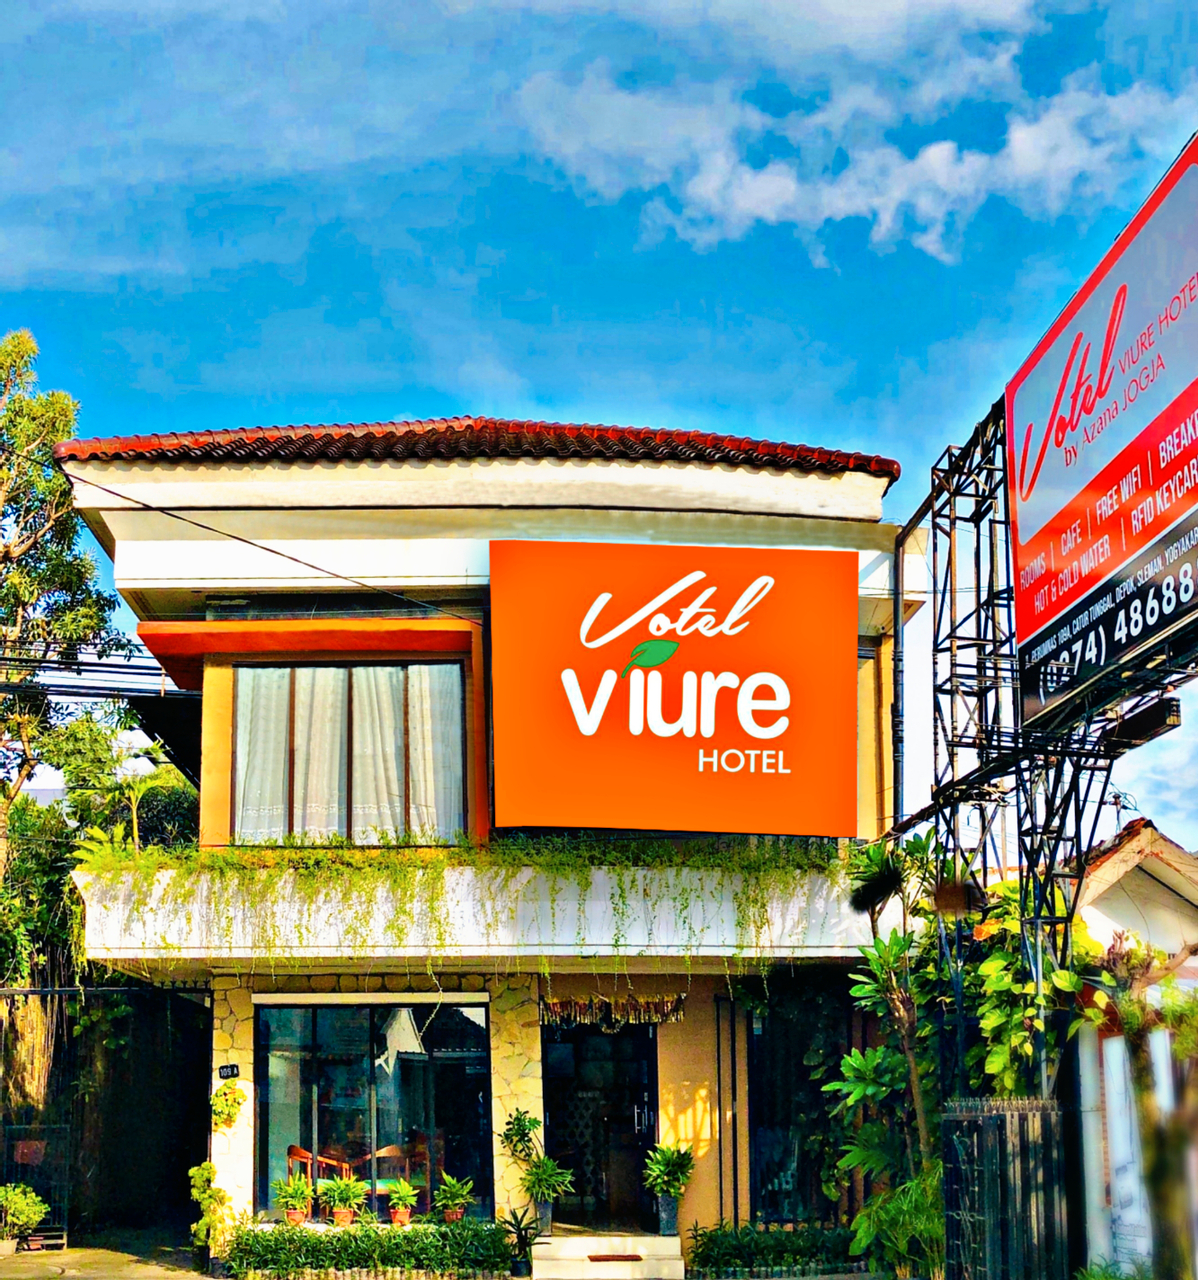 Votel Viure Hotel Jogja, Yogyakarta